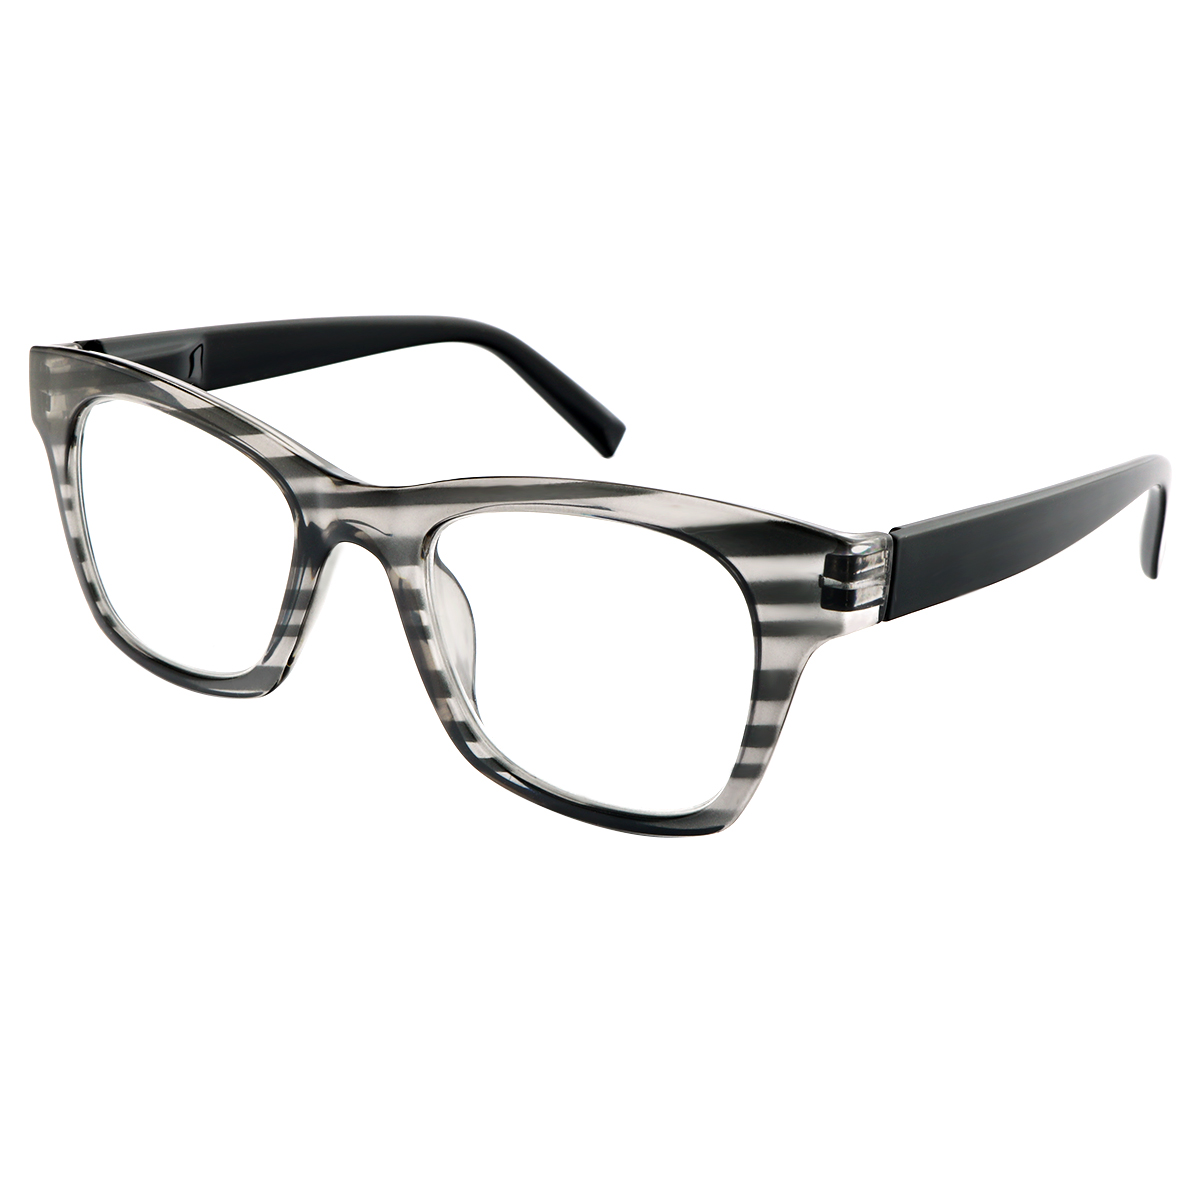 Hayley - Rectangle Black Reading Glasses for Men & Women